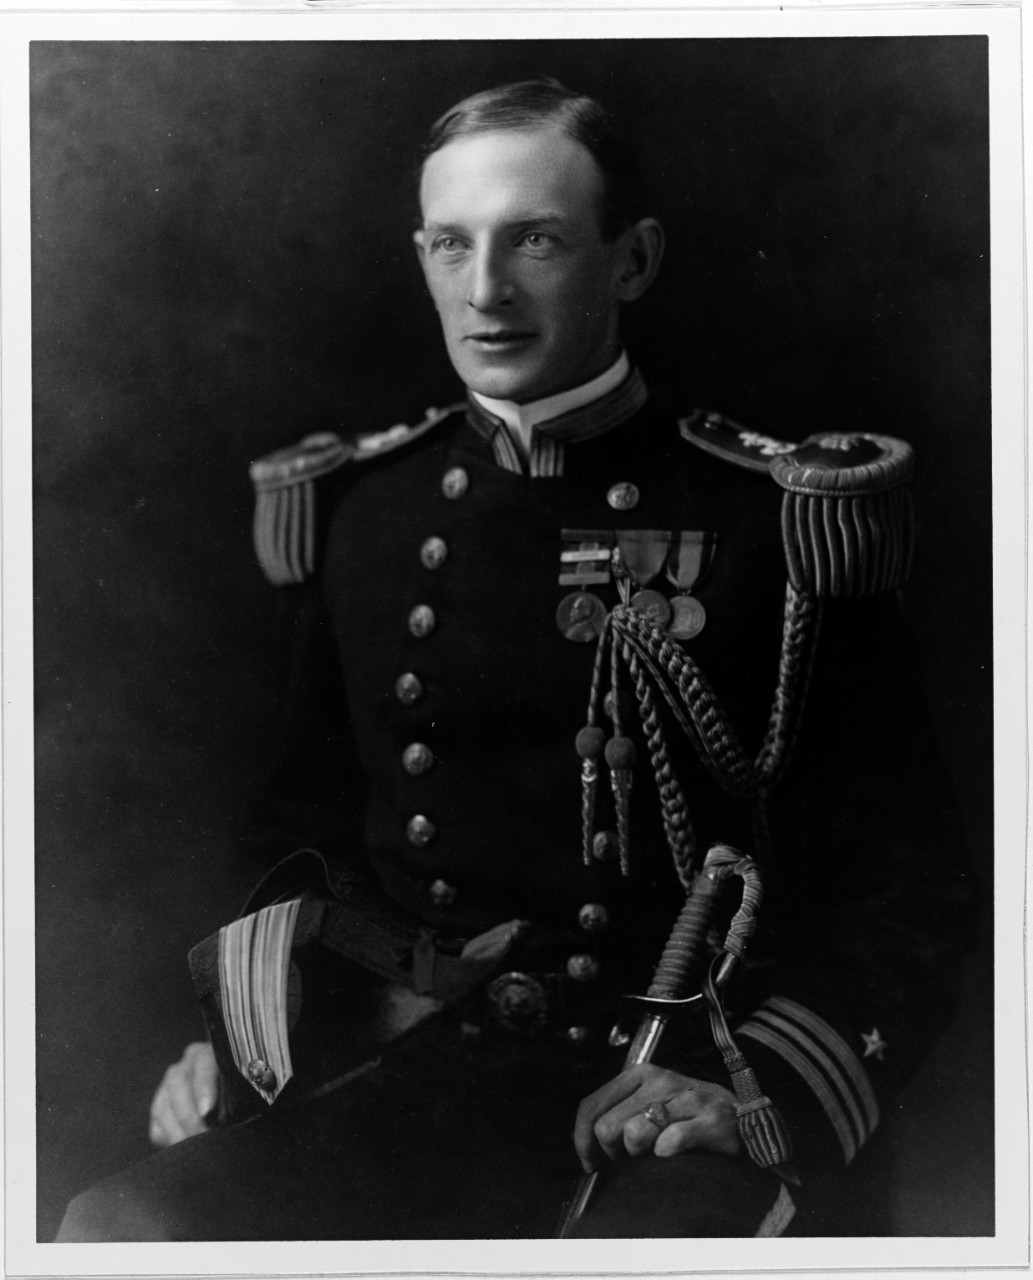 Lieutenant Commander Frederick J. Horne, USN